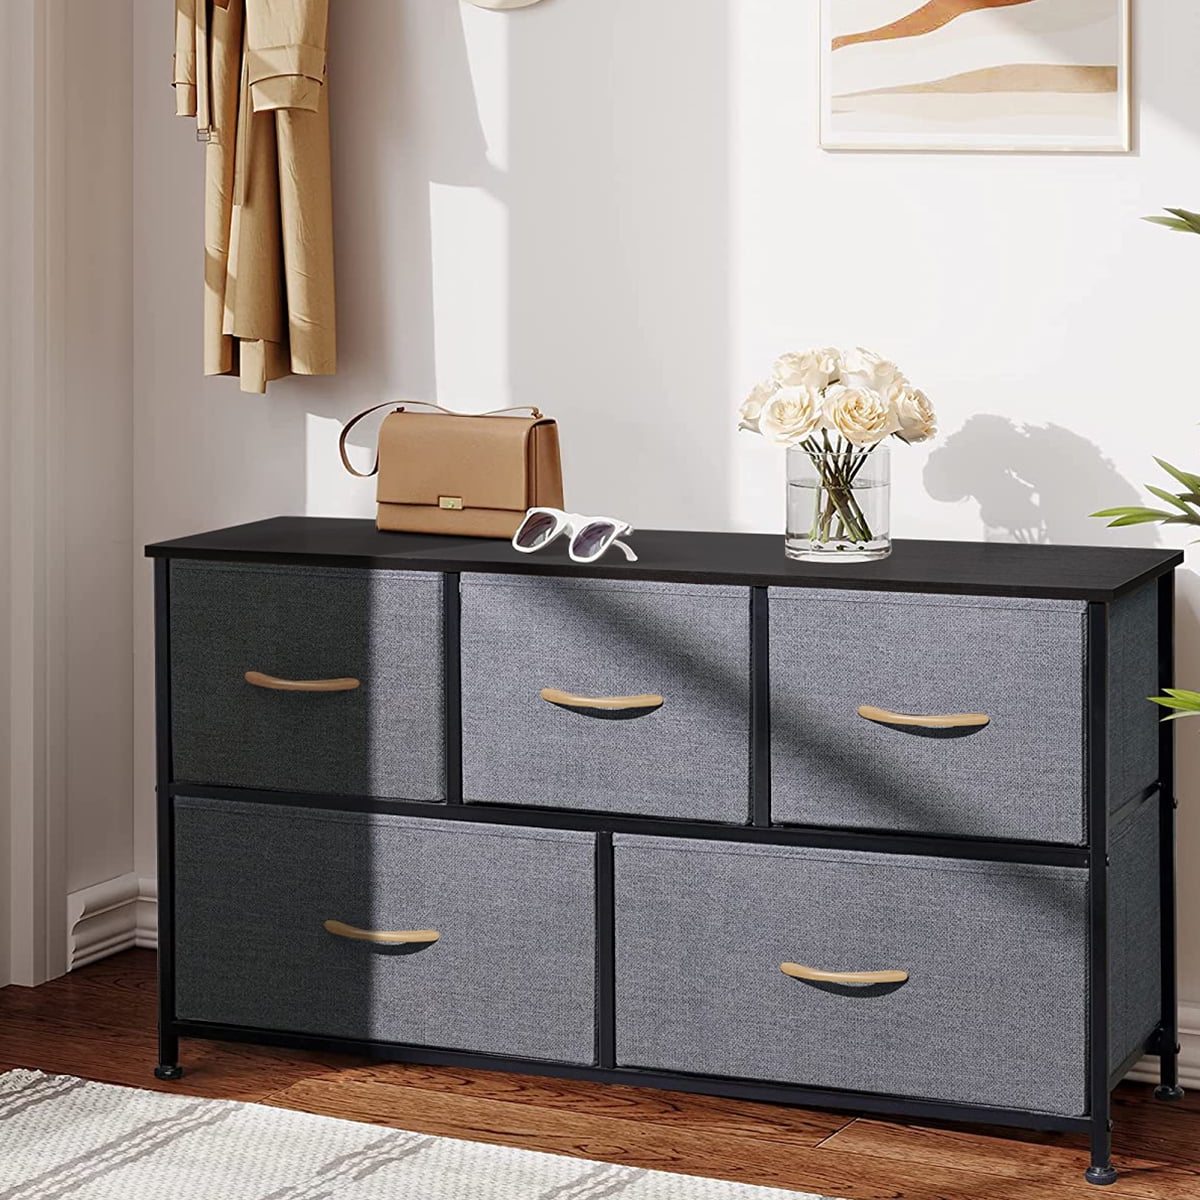 Details about   Dresser 5 Drawer Bedroom Furniture Storage Chest Organizer Closet Cabinet Home 